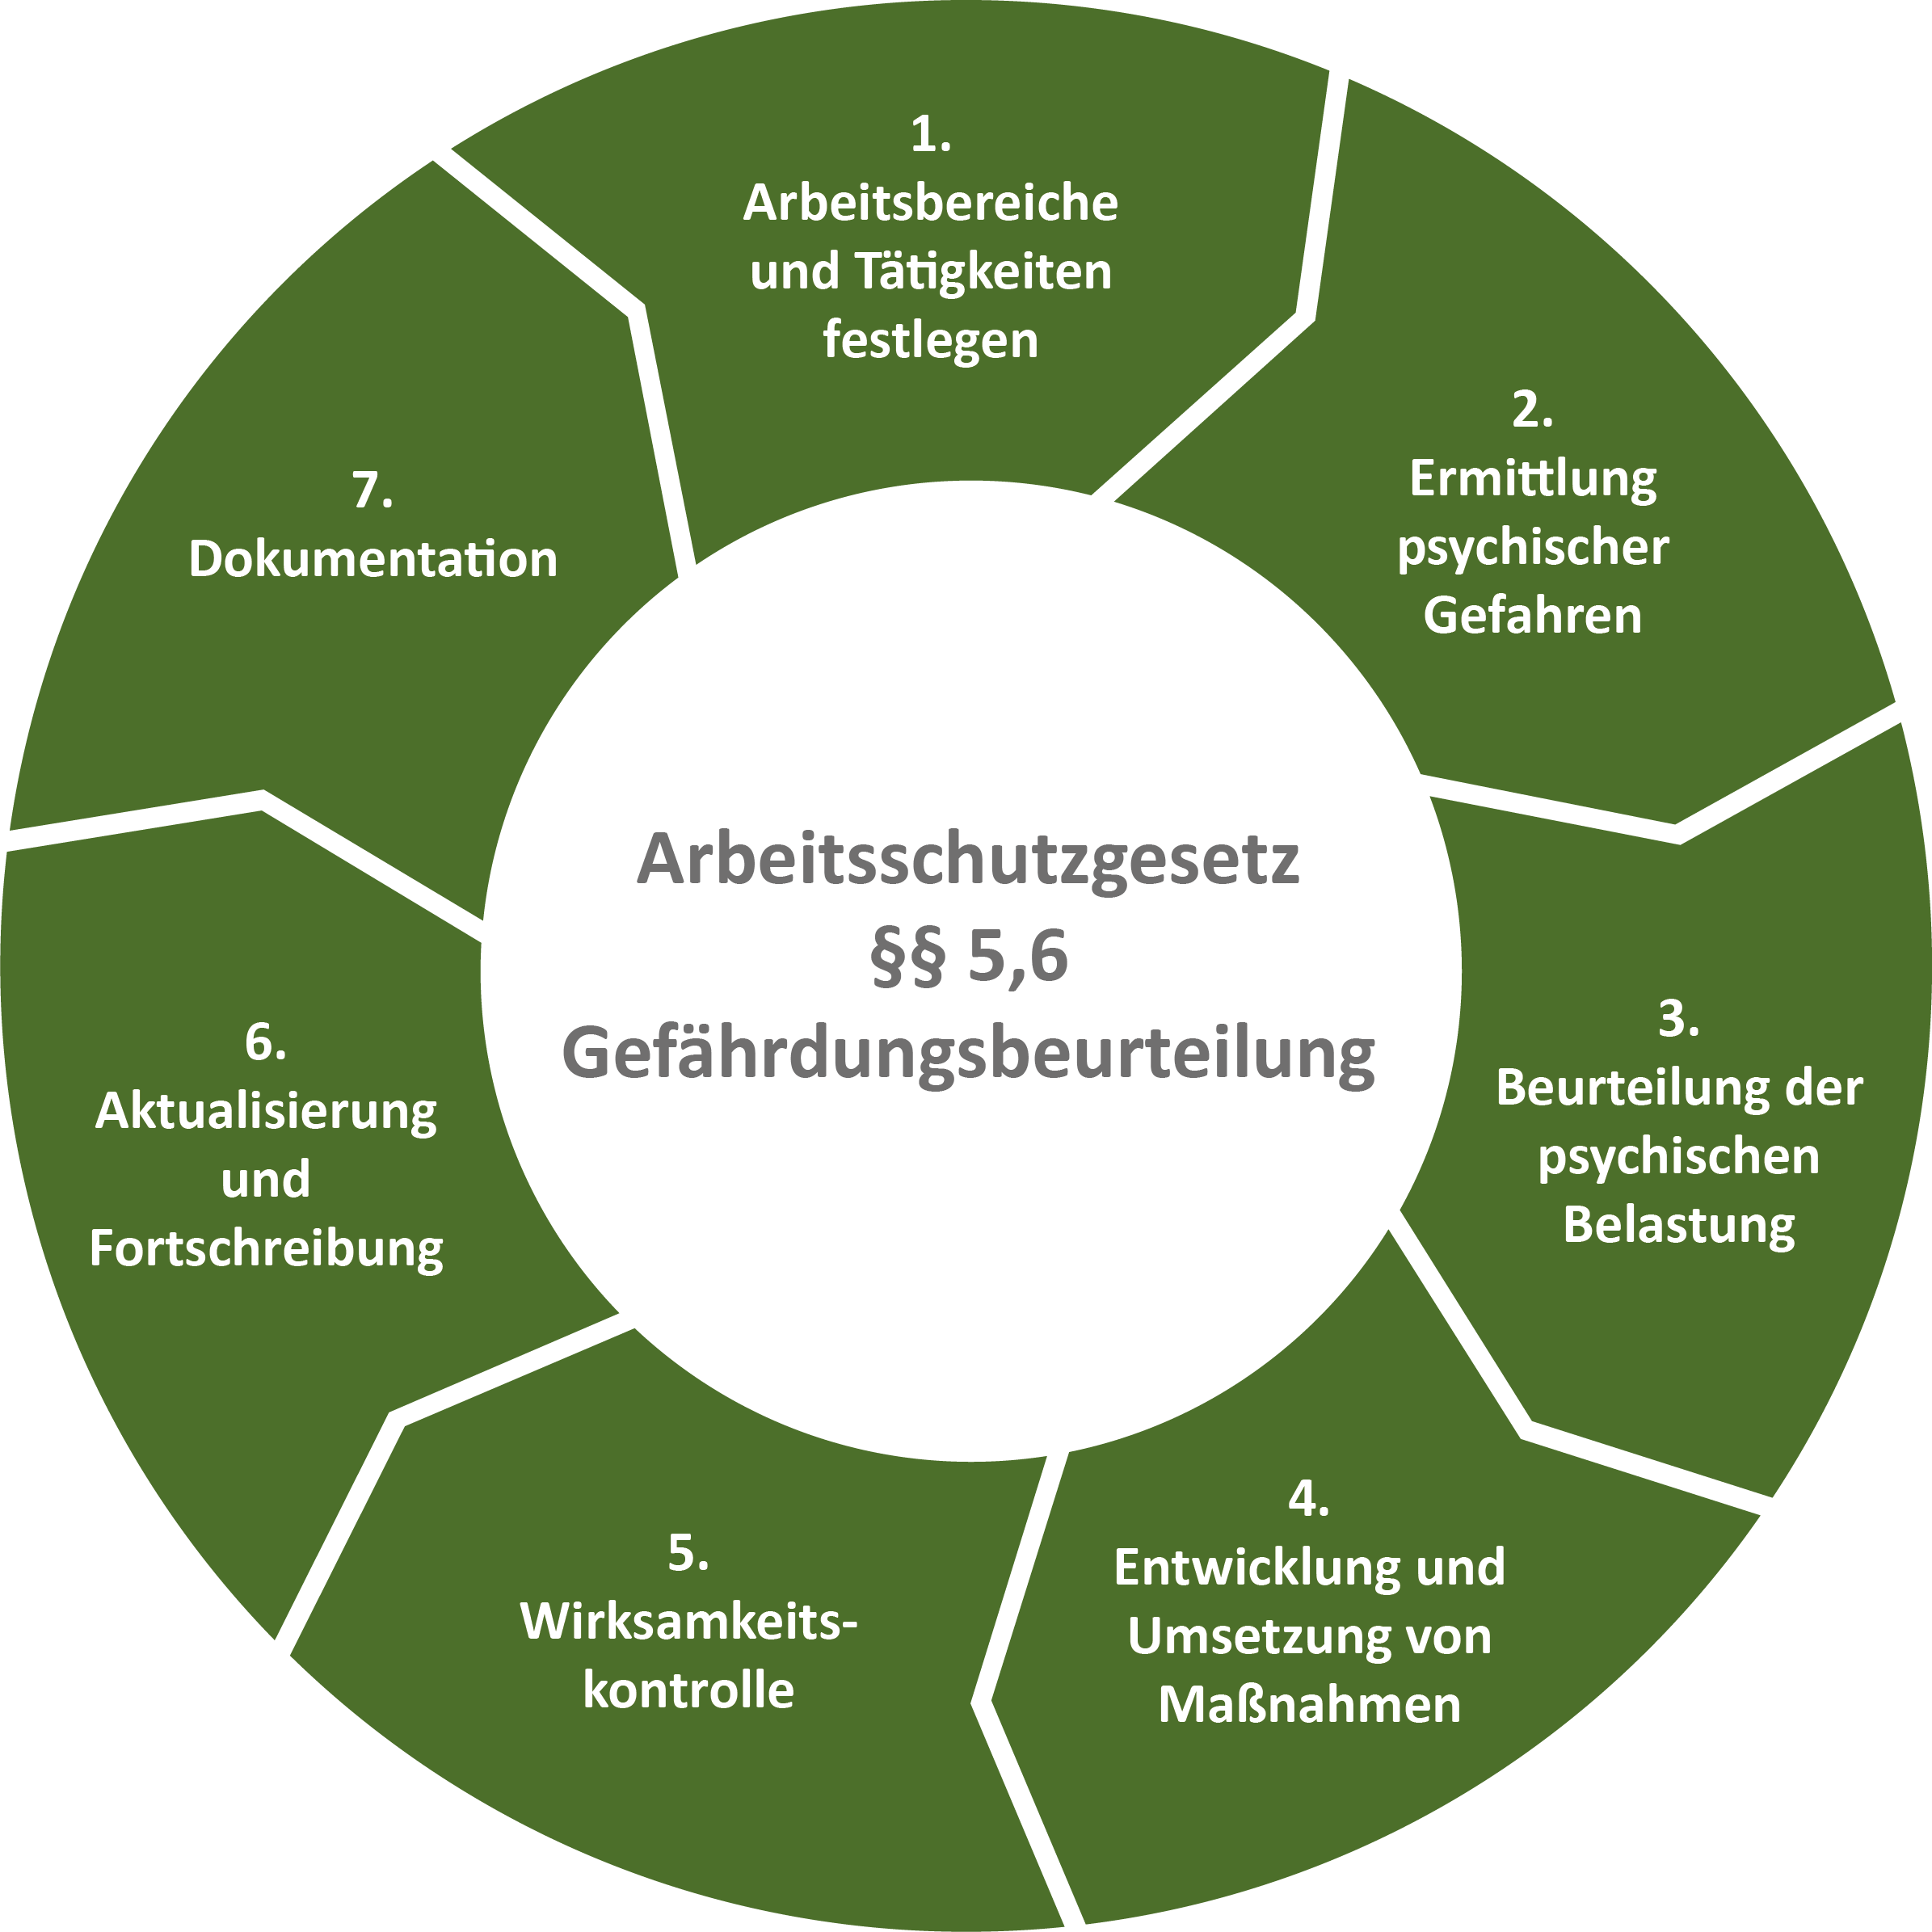 Kreisdiagramm ecoprotec GmbH - Die sieben Schritte der Gefährdungsbeurteilung